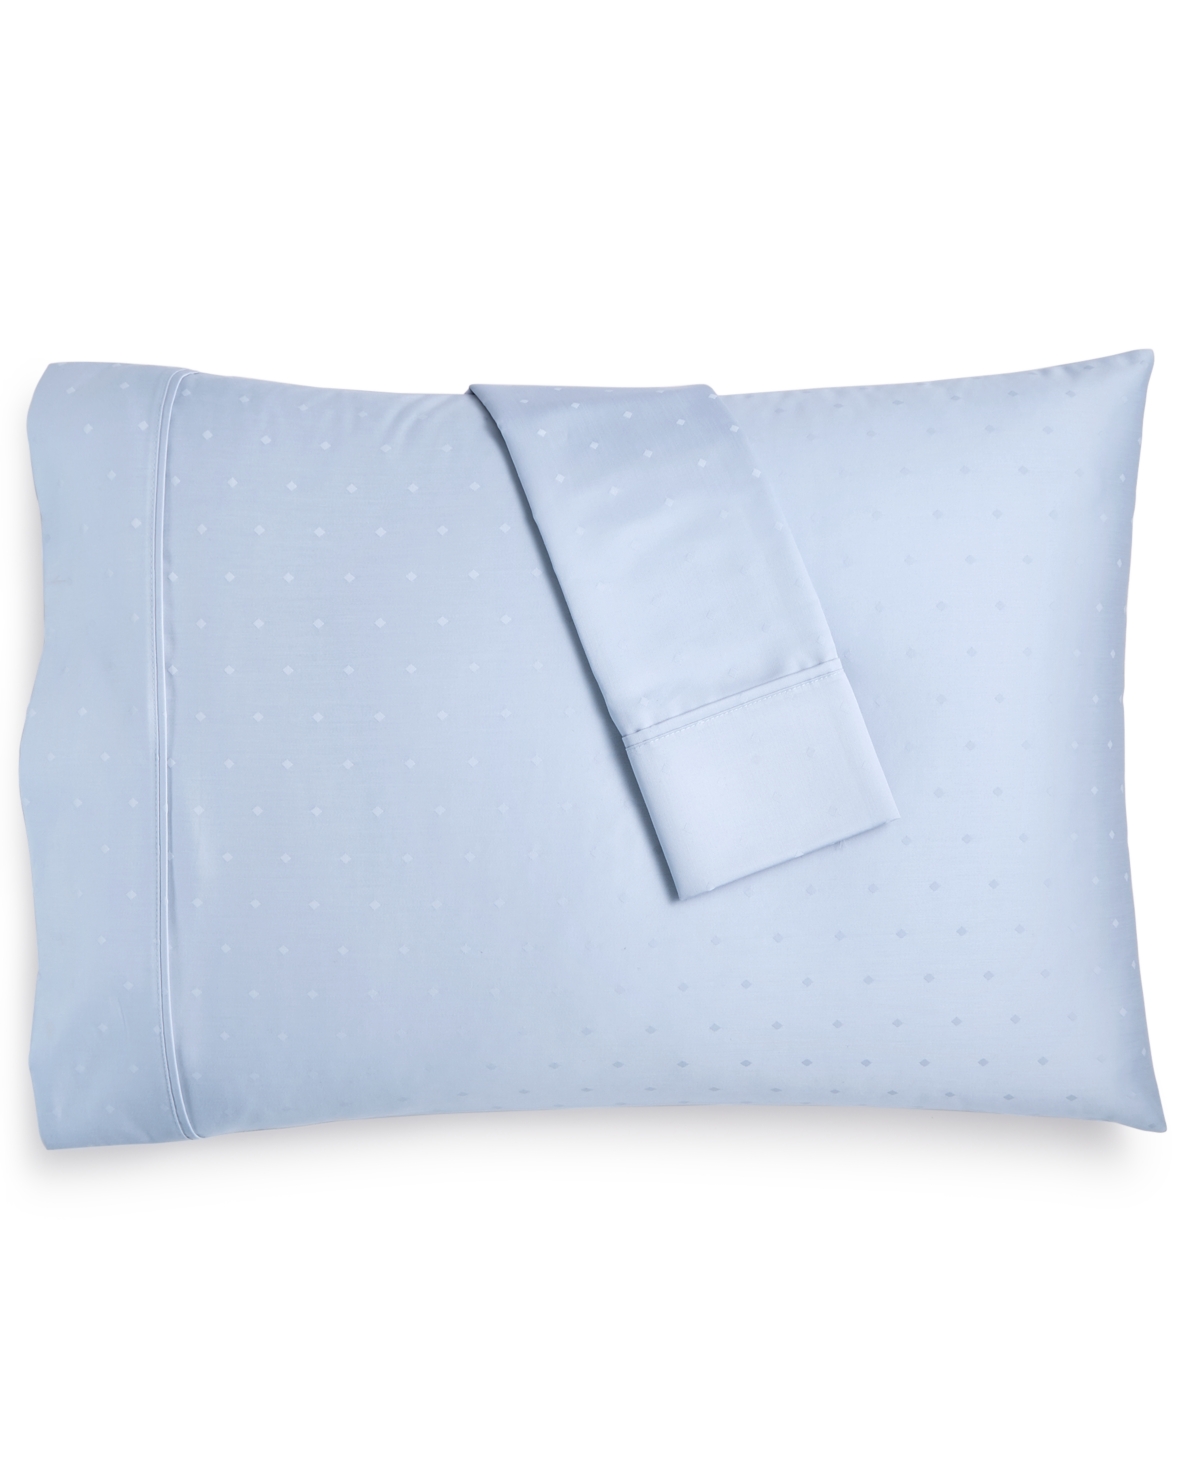 Bergen House Diamond Dot 100% Certified Egyptian Cotton 1000 Thread Count Pillowcase Pair, Standard Bedding